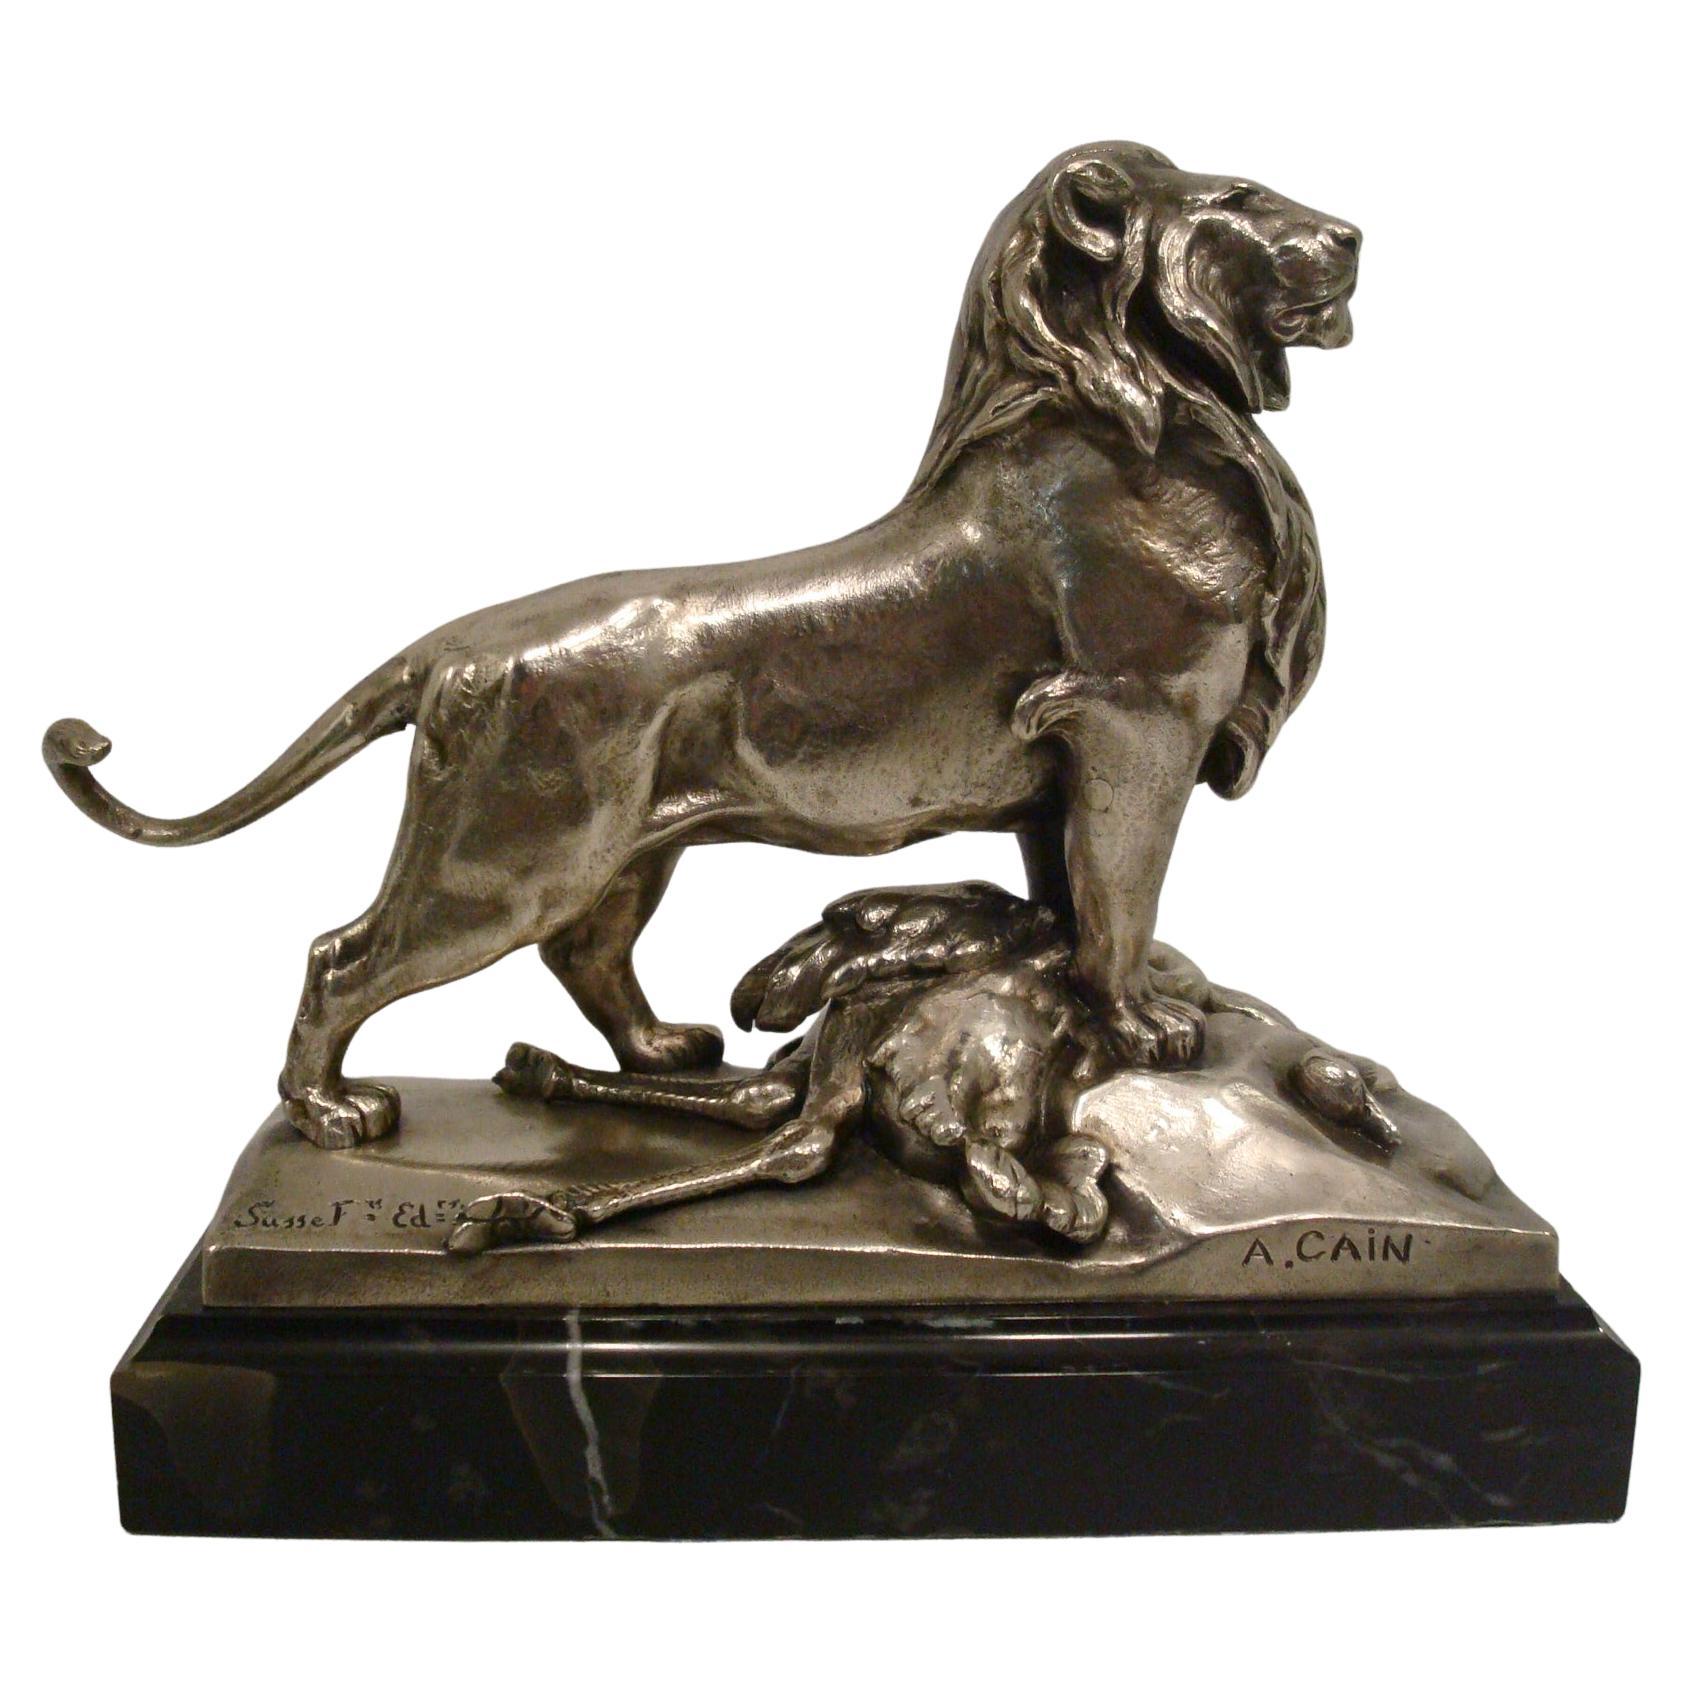 Auguste Cain versilberte Bronze-Skulptur Löwe und Strauß, 19. Jahrhundert.